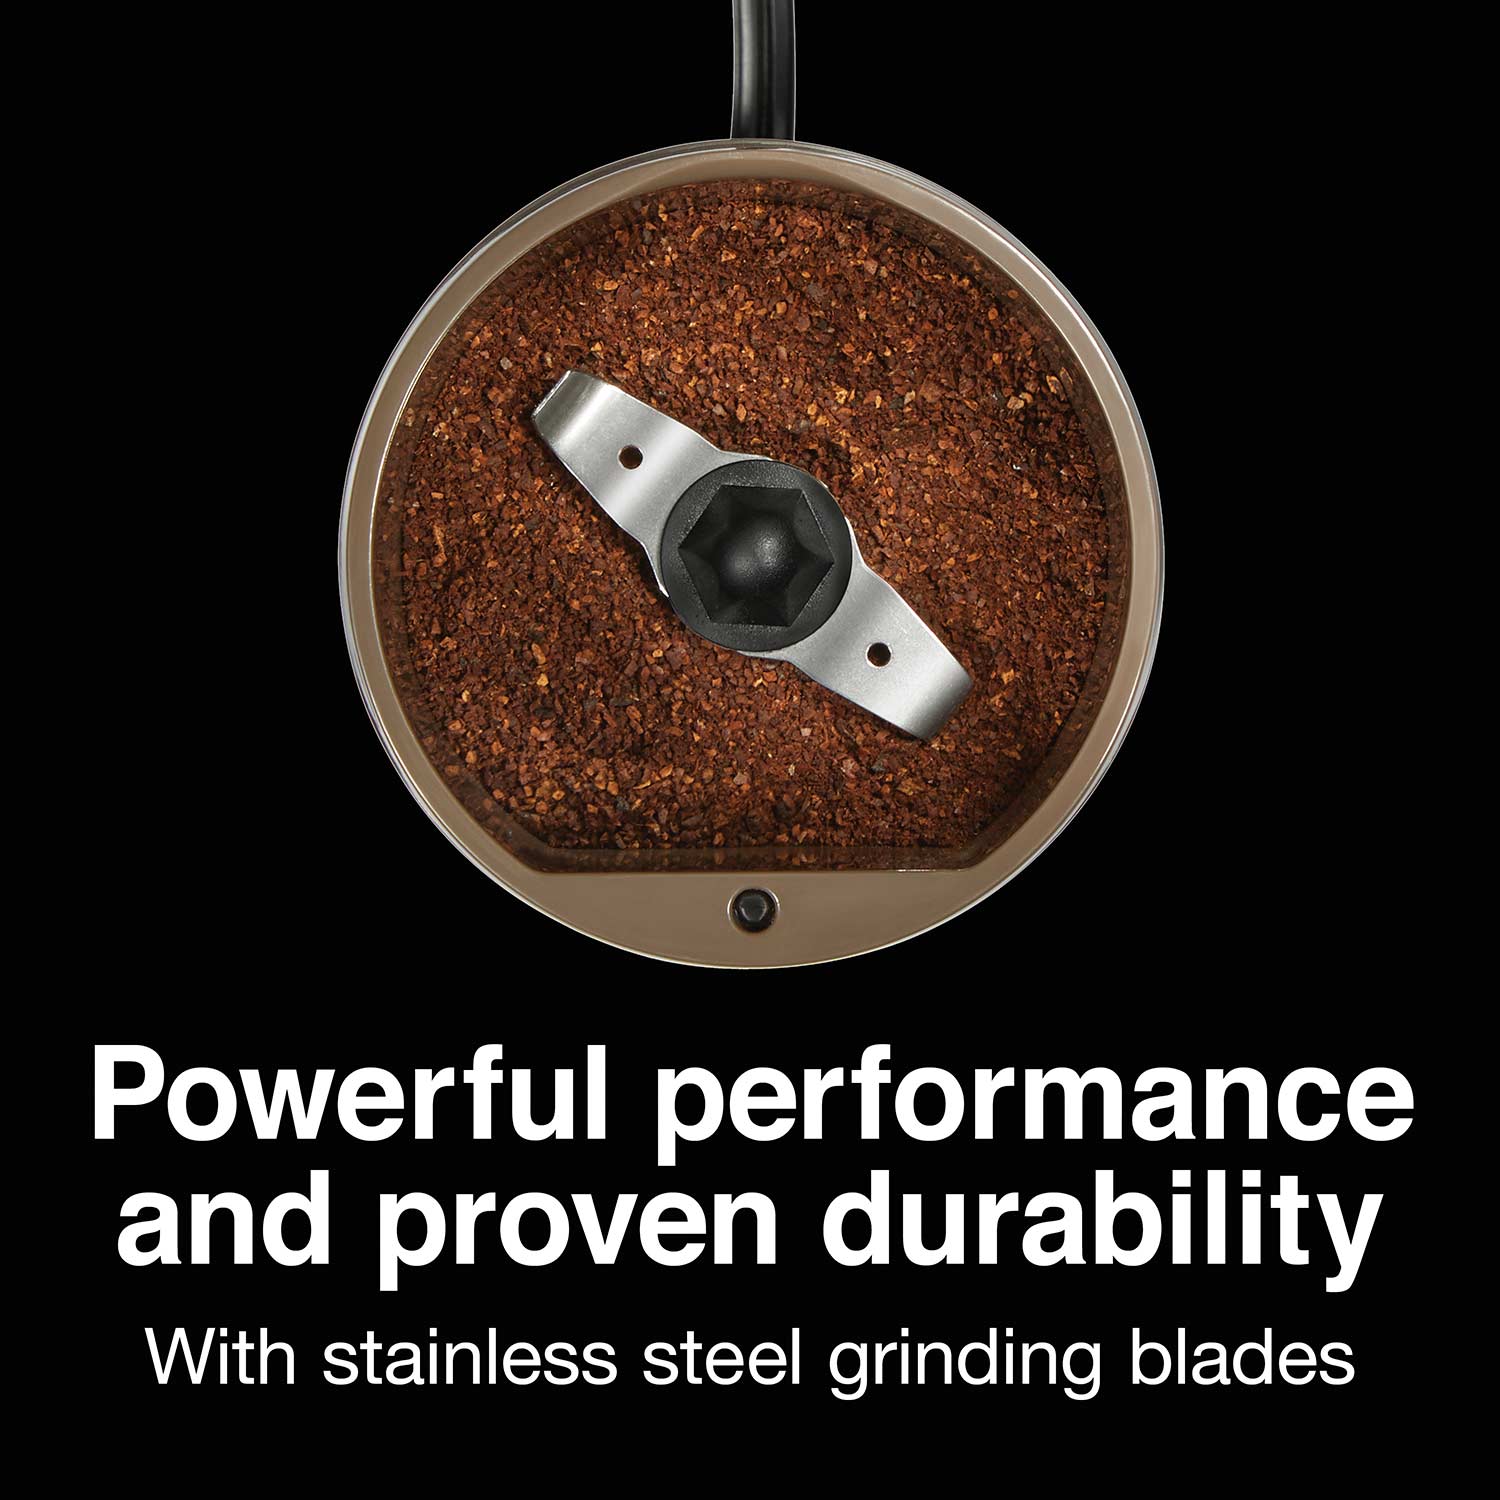 Proctor Silex, Kitchen, Proctorsilex Electric Stainless Steel Coffee And  Spice Grinder